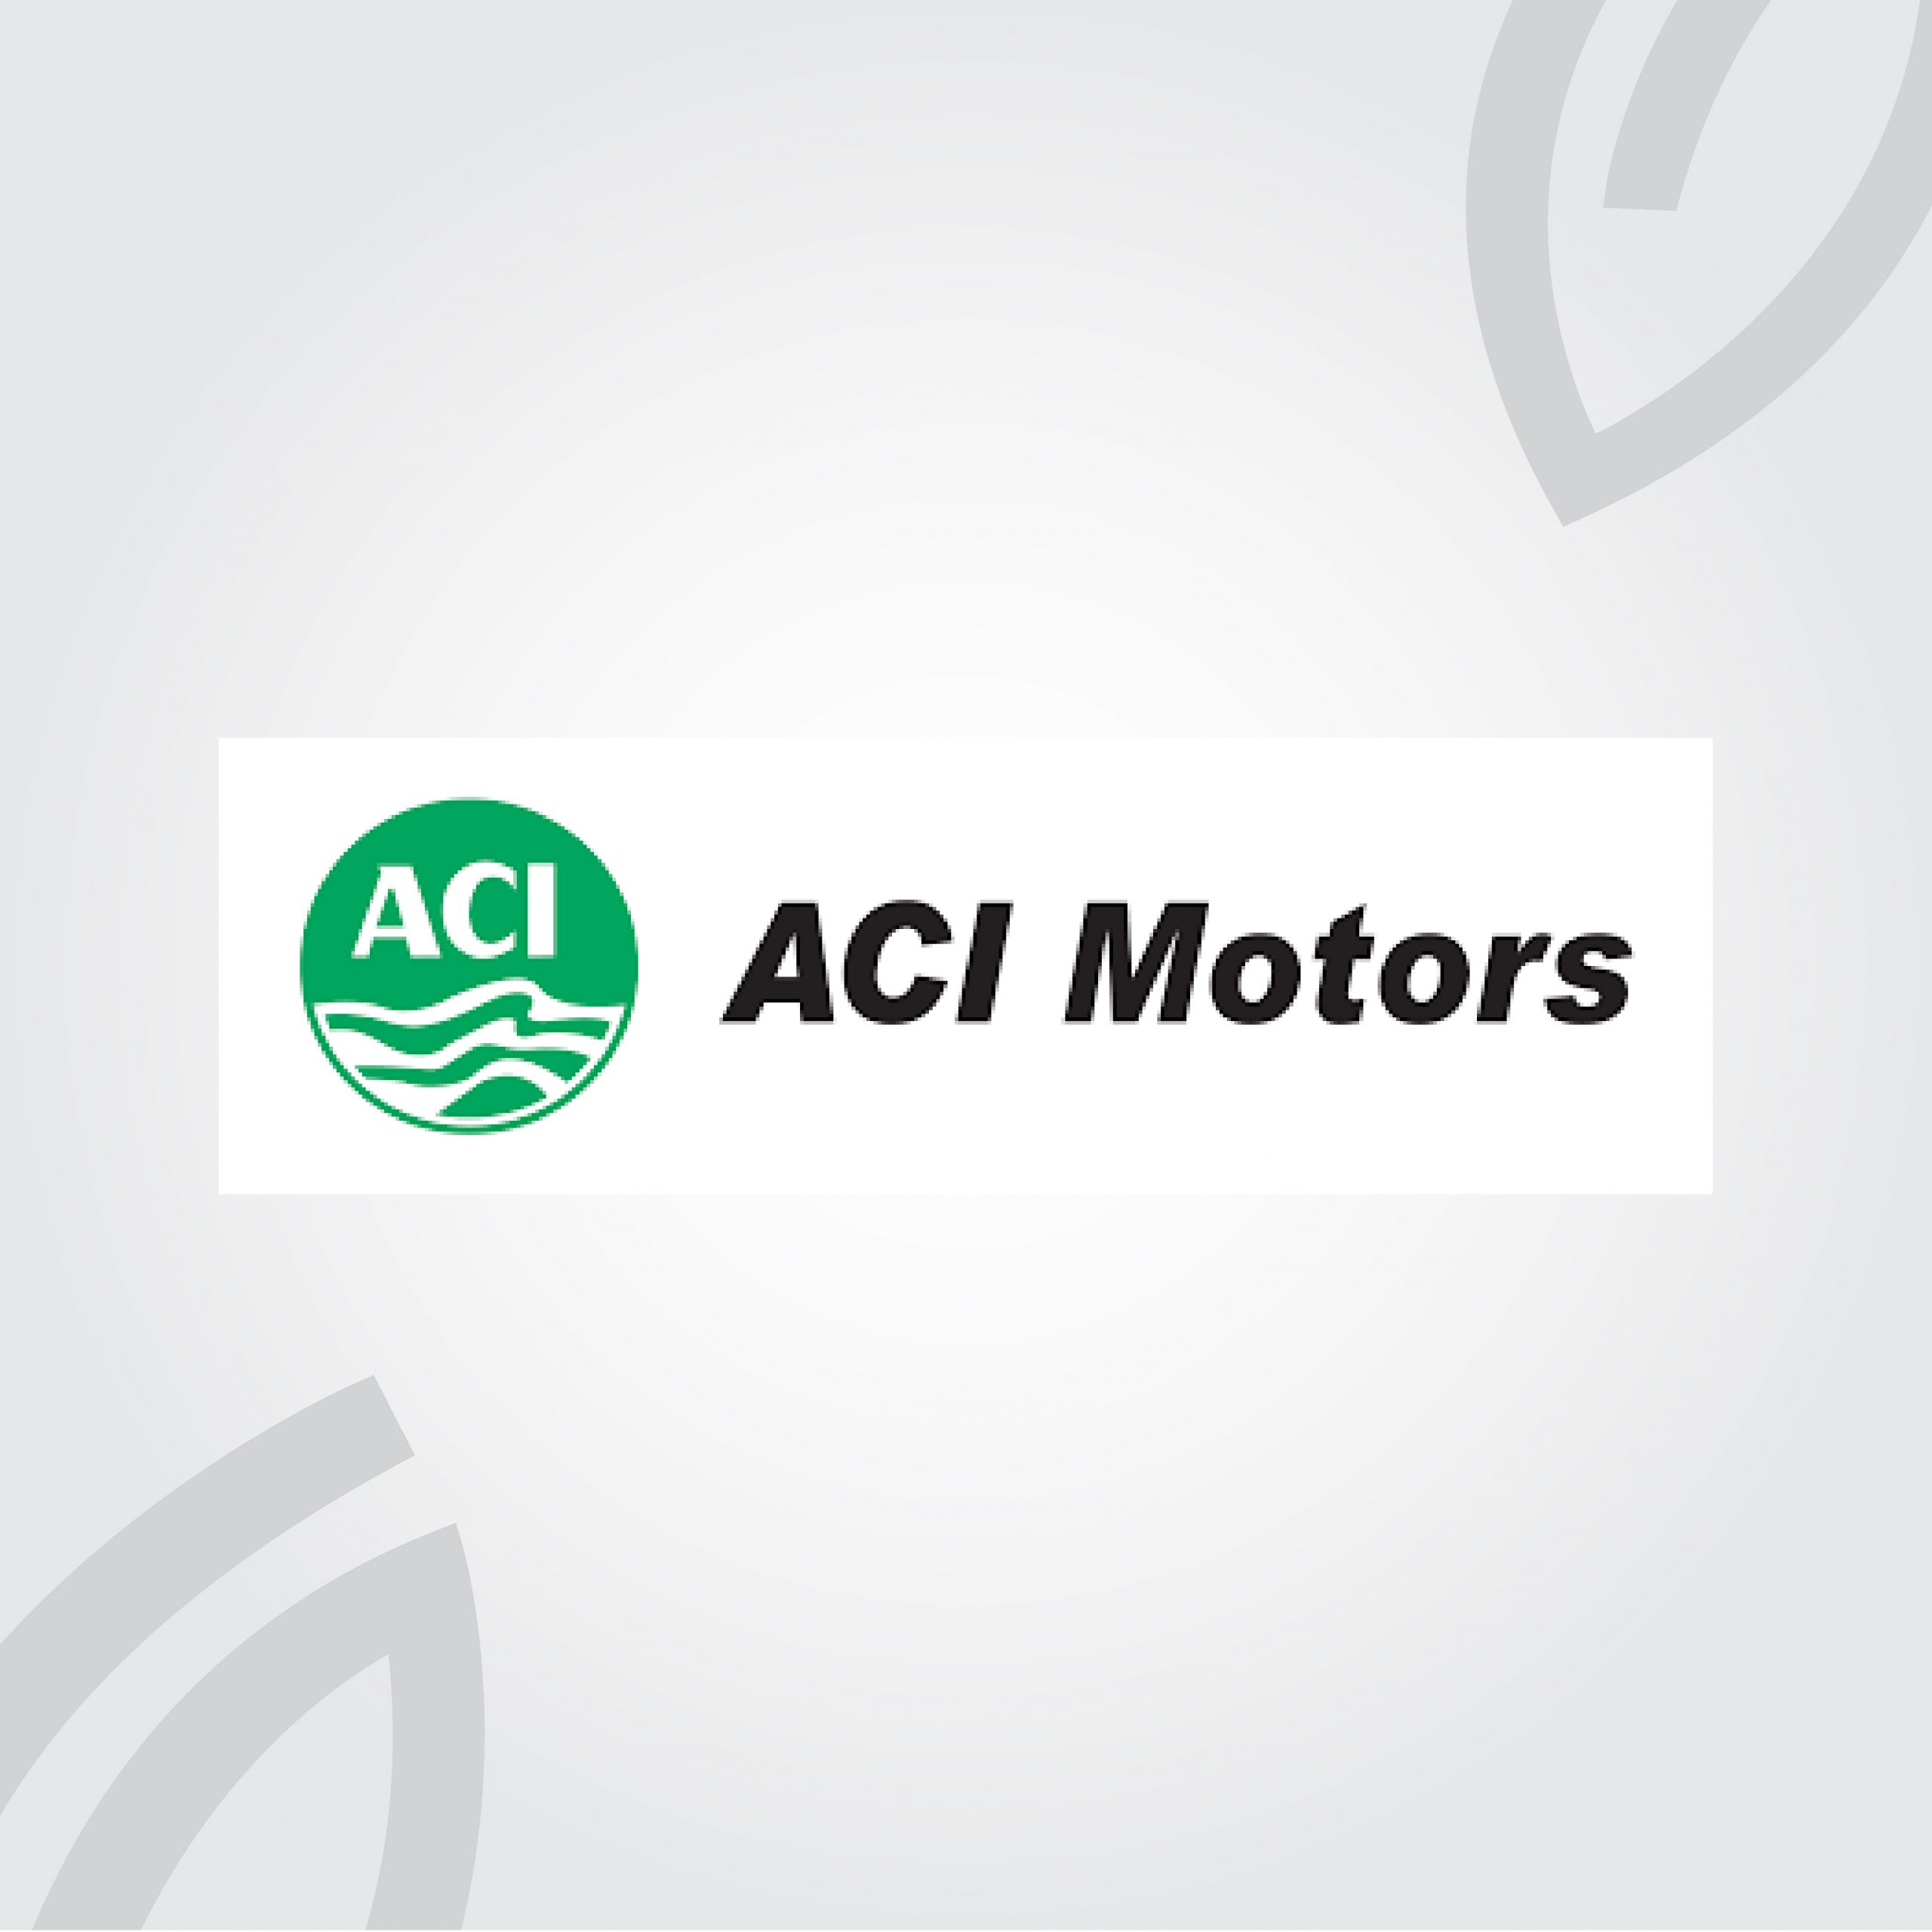 ACI Motors